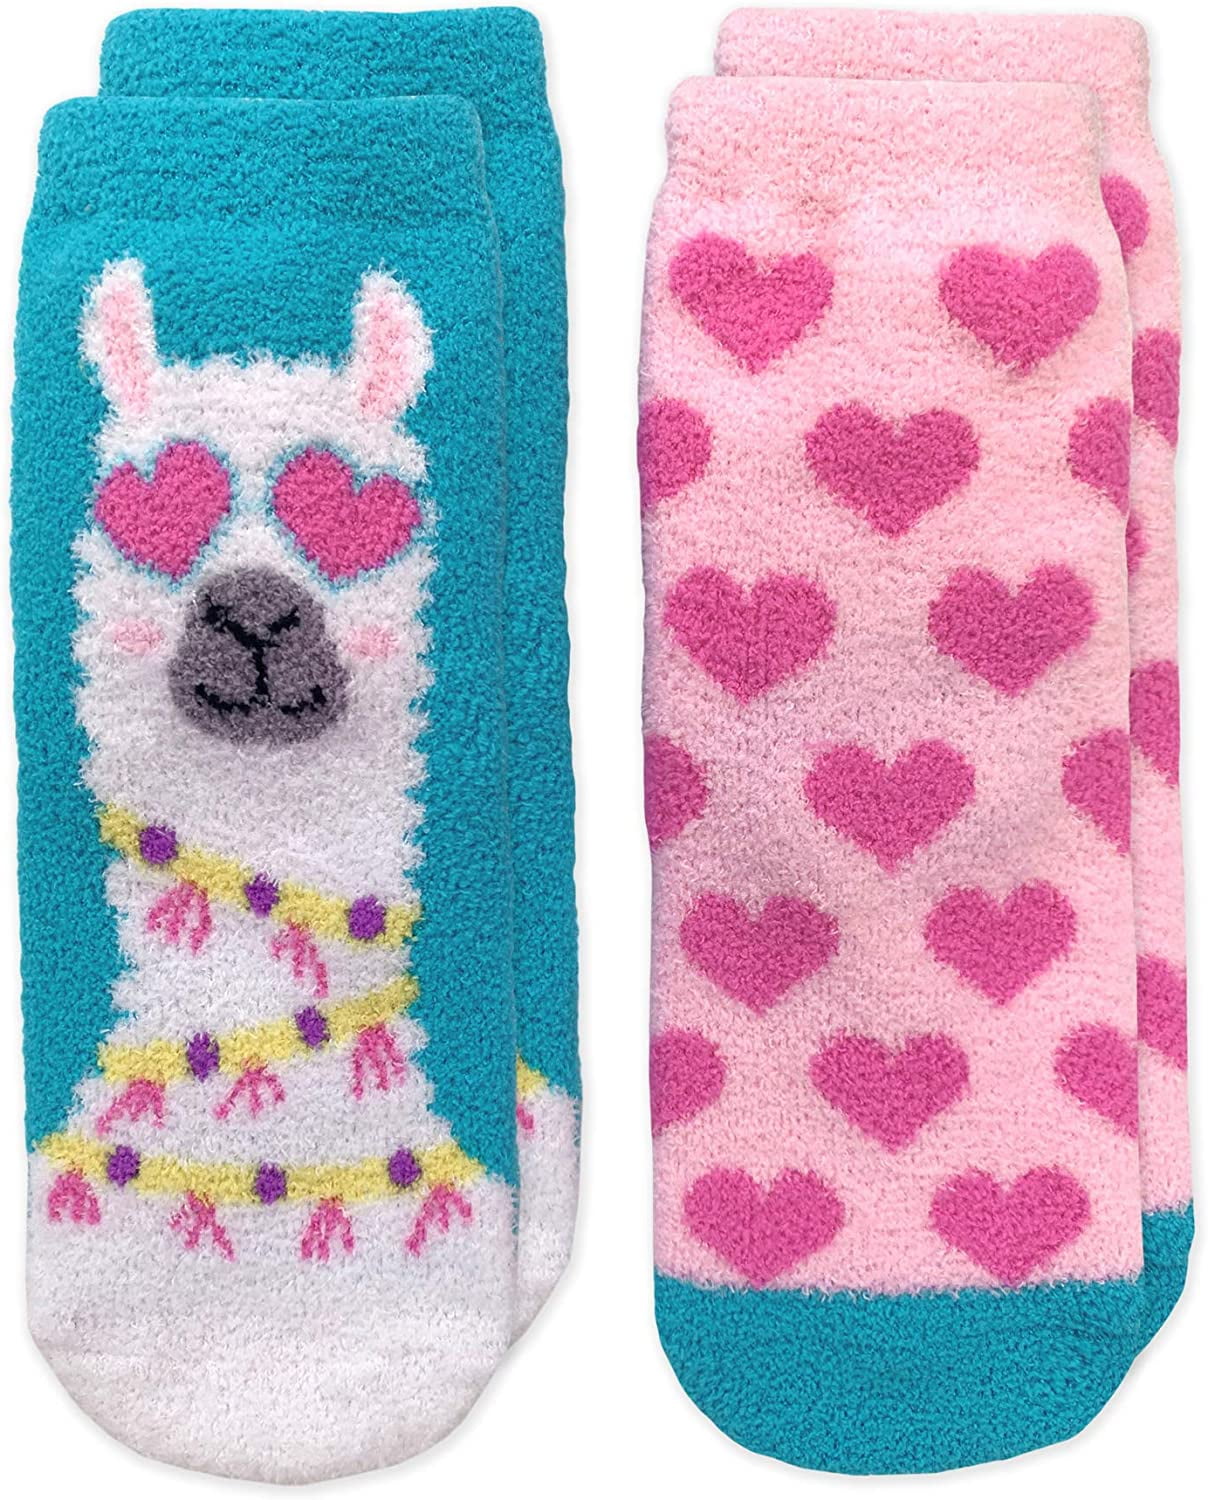 Jefferies Socks Baby Girls Non-Skid Cat Crew Socks 6 Pair Pack